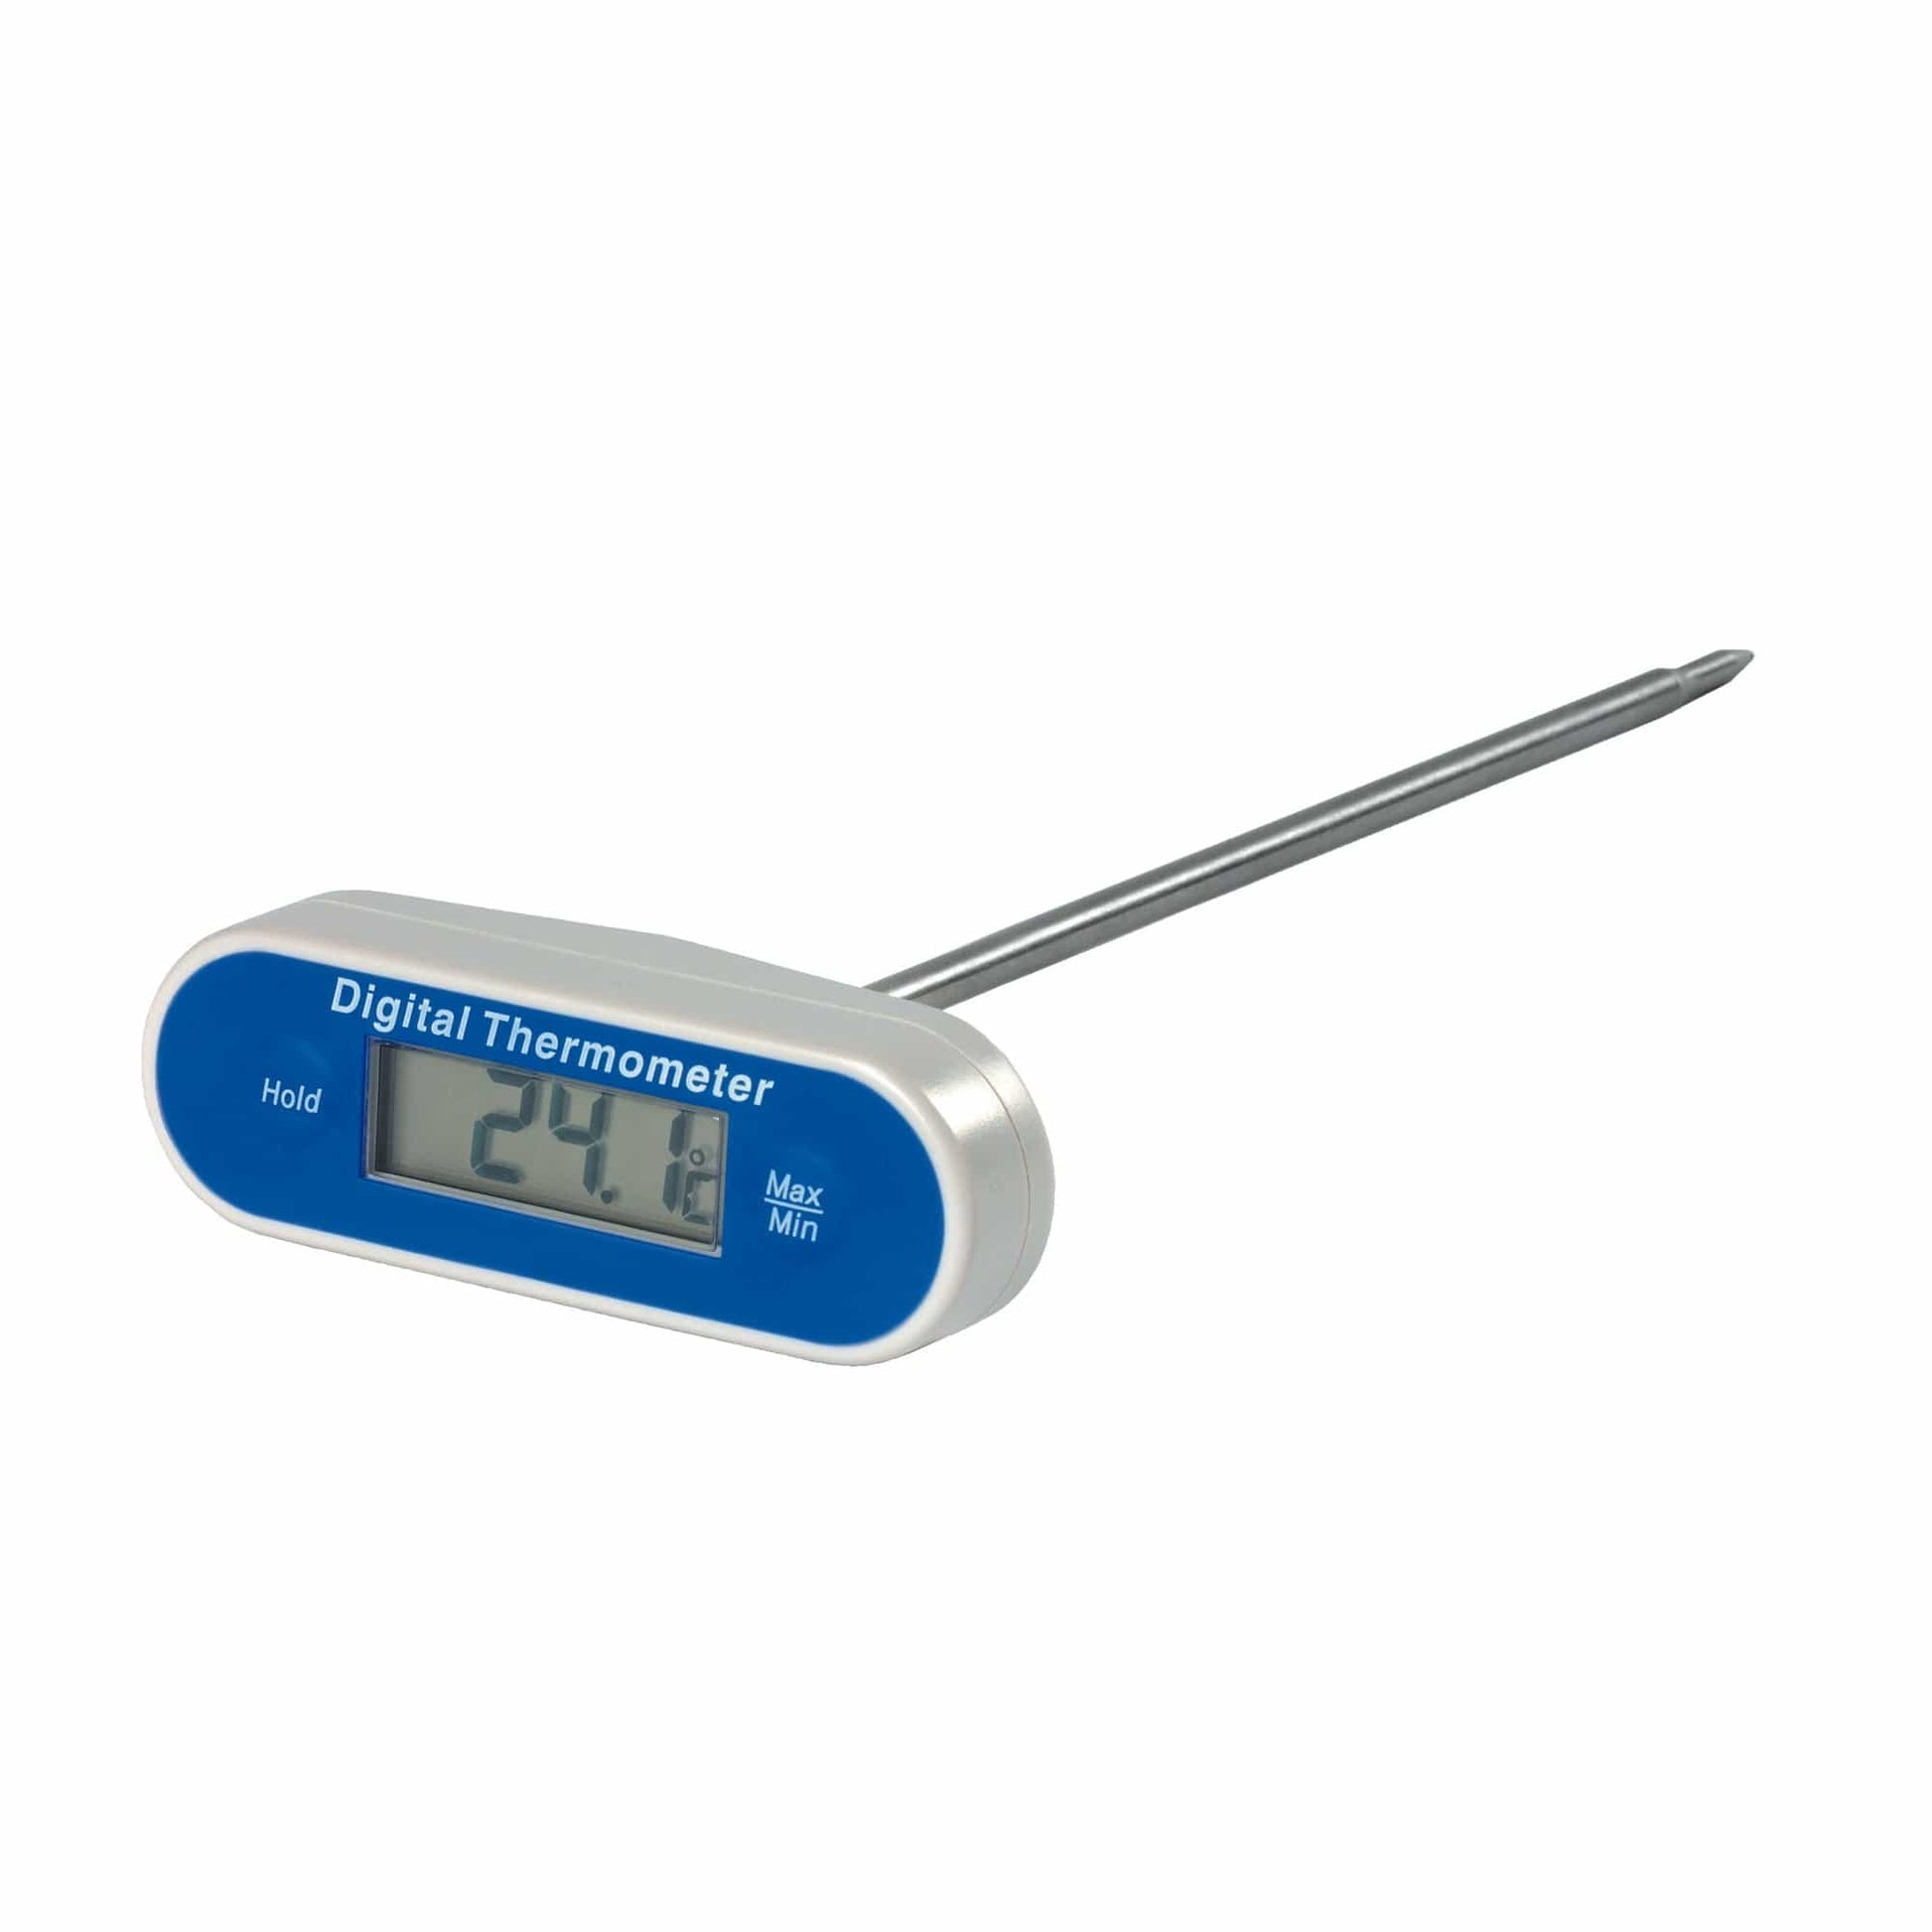 Thermomètre numérique / Thermomètres / Instrumentation